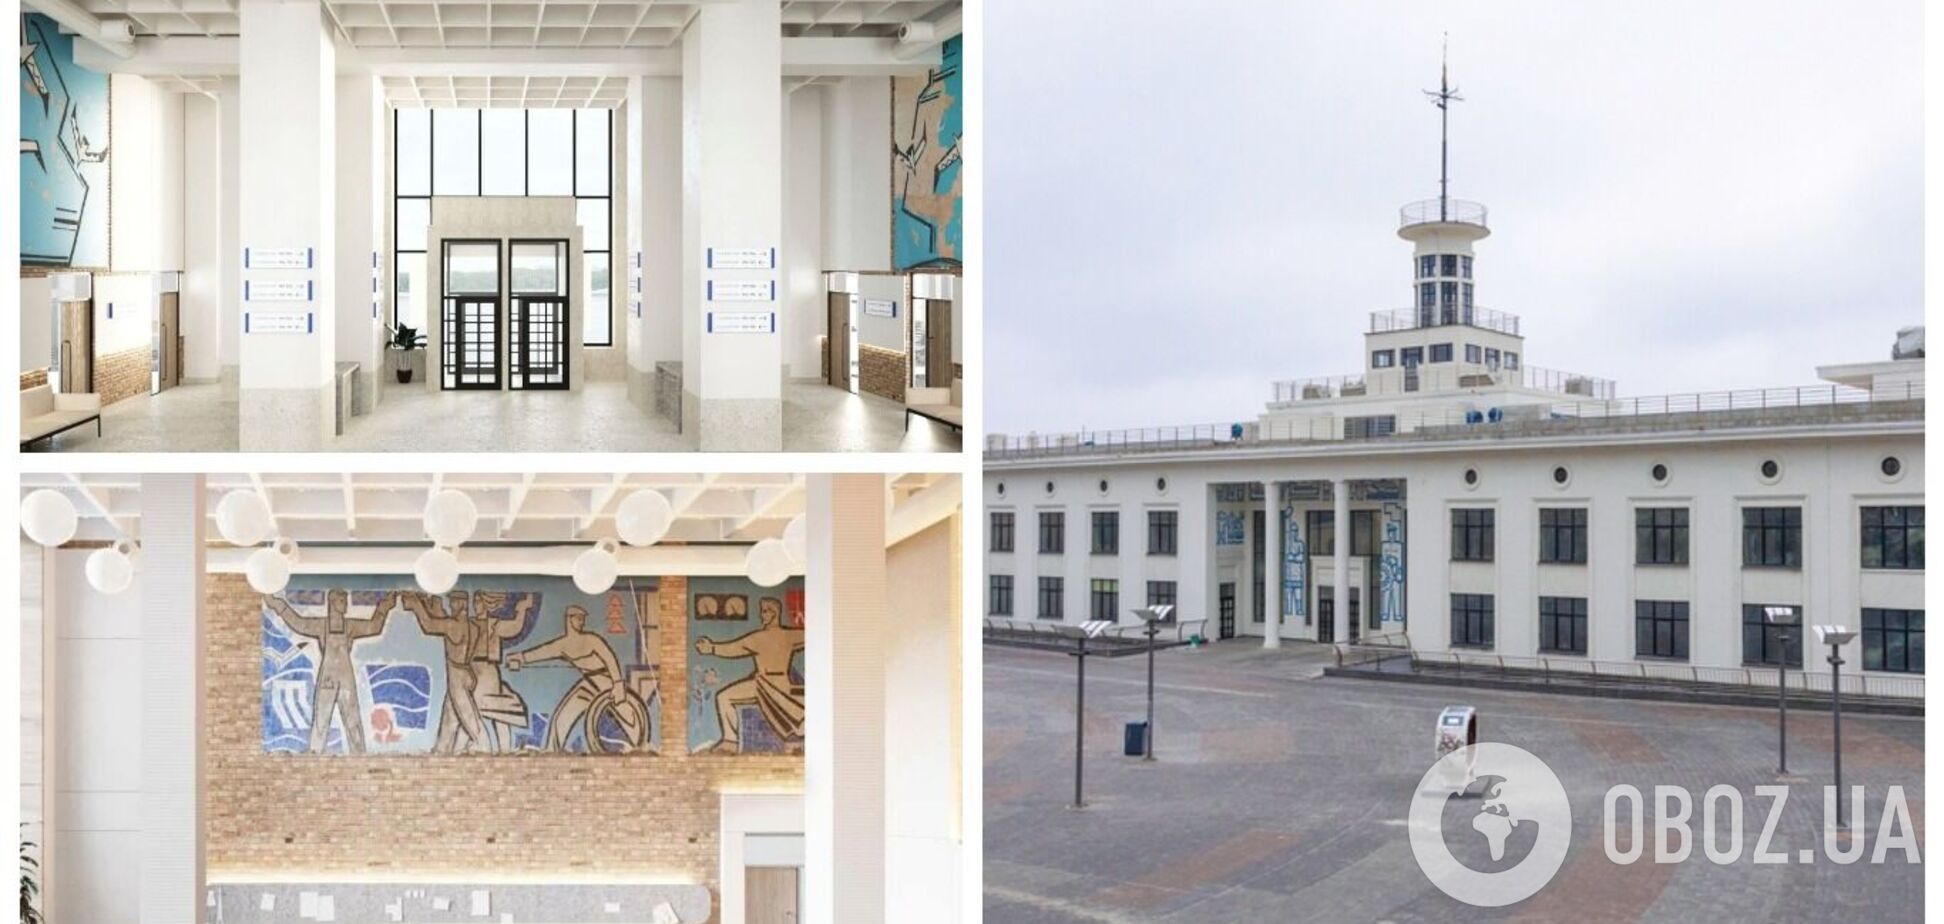 В Киеве при поддержке 'Укргазбанка' восстановили историческое здание Речного вокзала. Фото